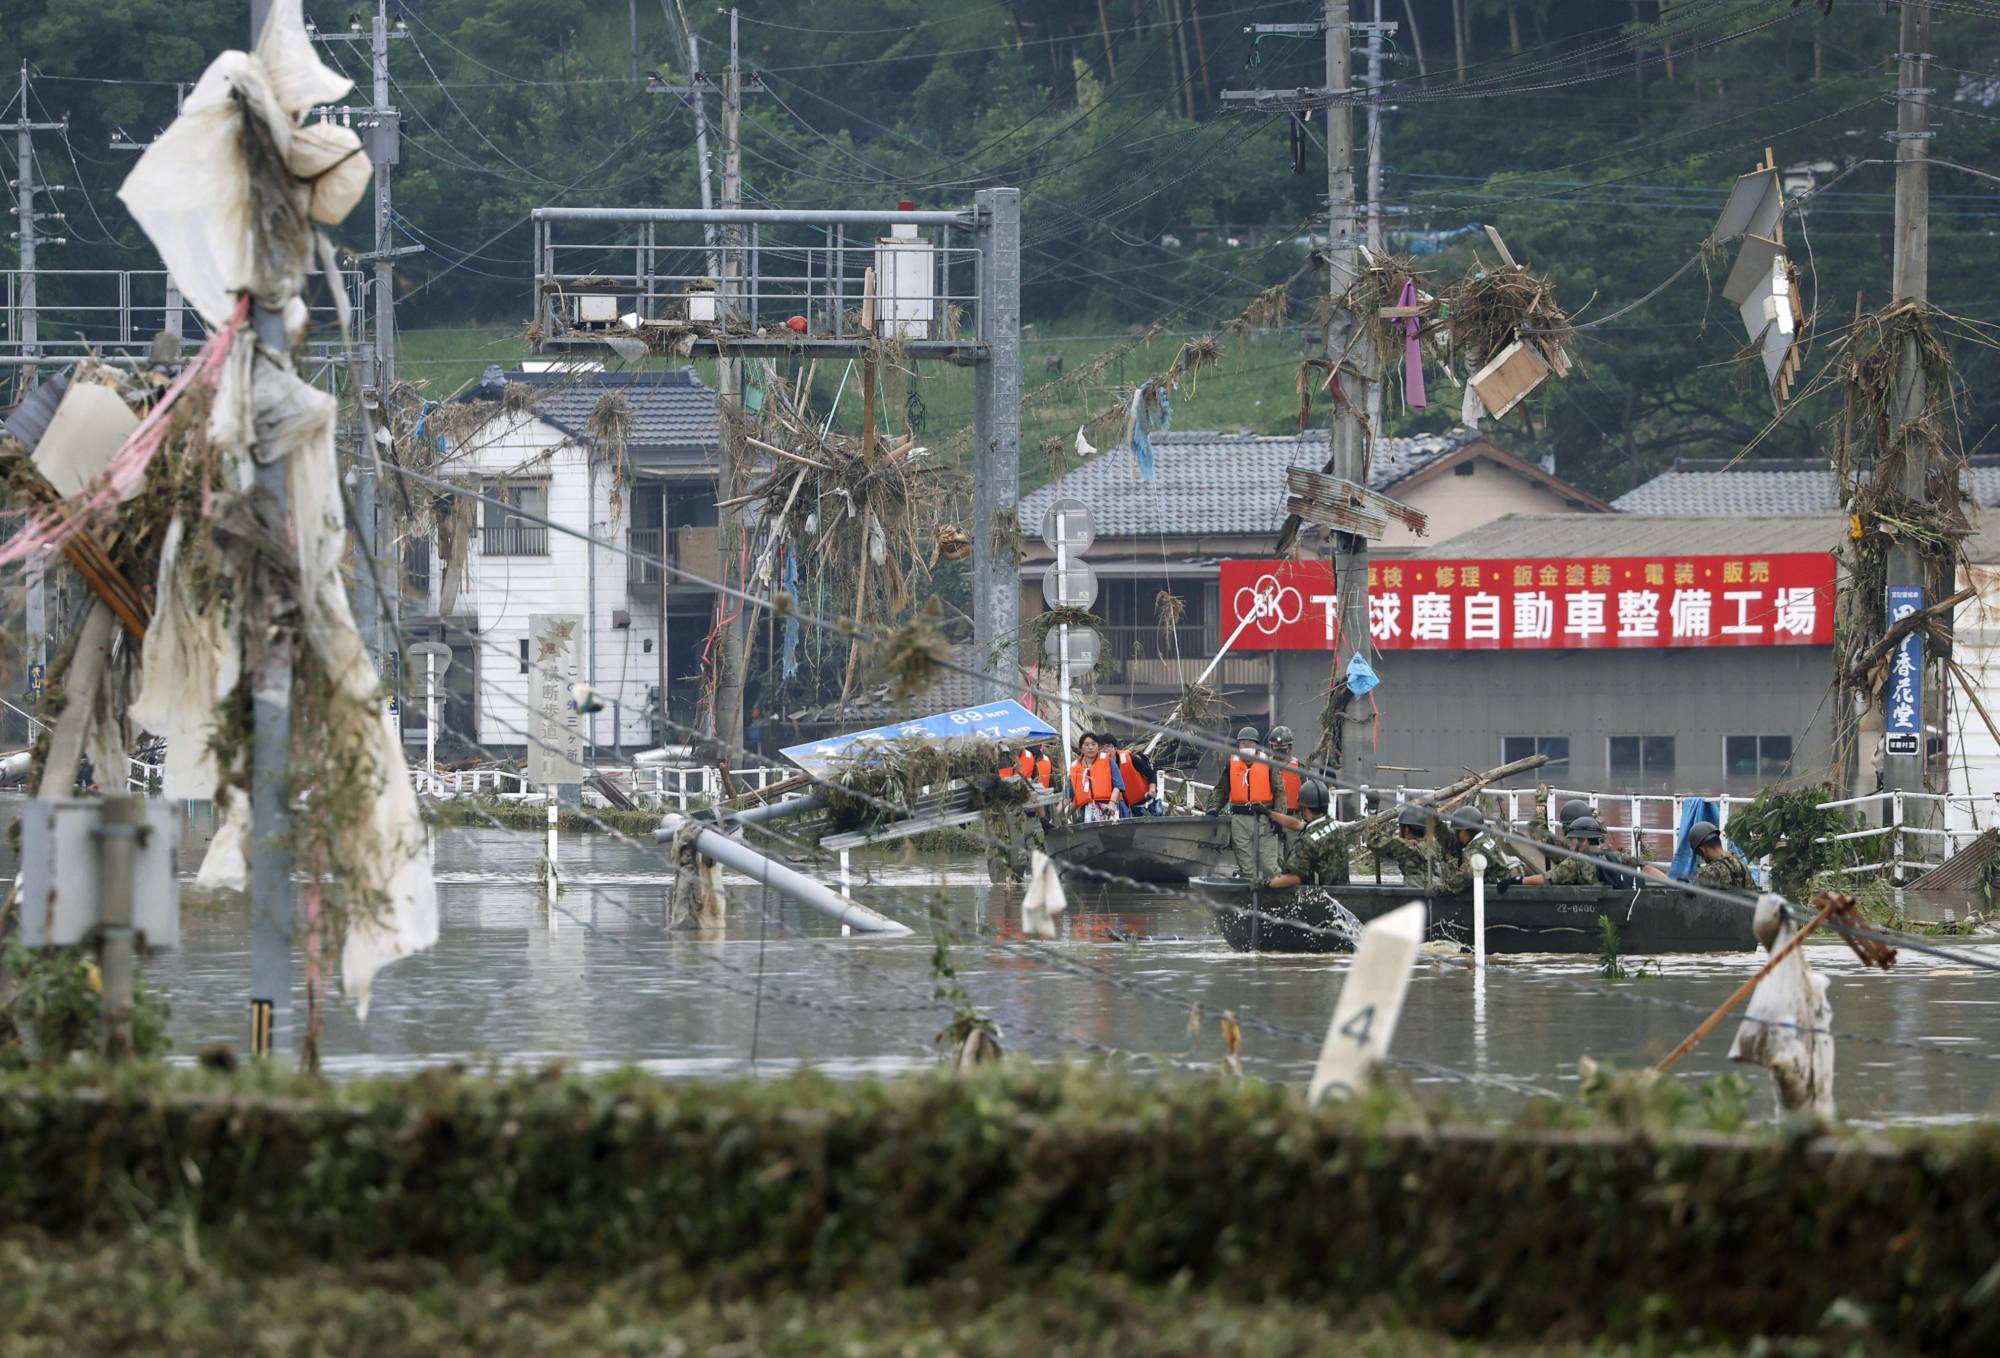 Chùm ảnh lũ lụt nhấn chìm viện dưỡng lão, nuốt chửng nhà dân khiến ít nhất 20 người thiệt mạng ở Nhật Bản - Ảnh 10.